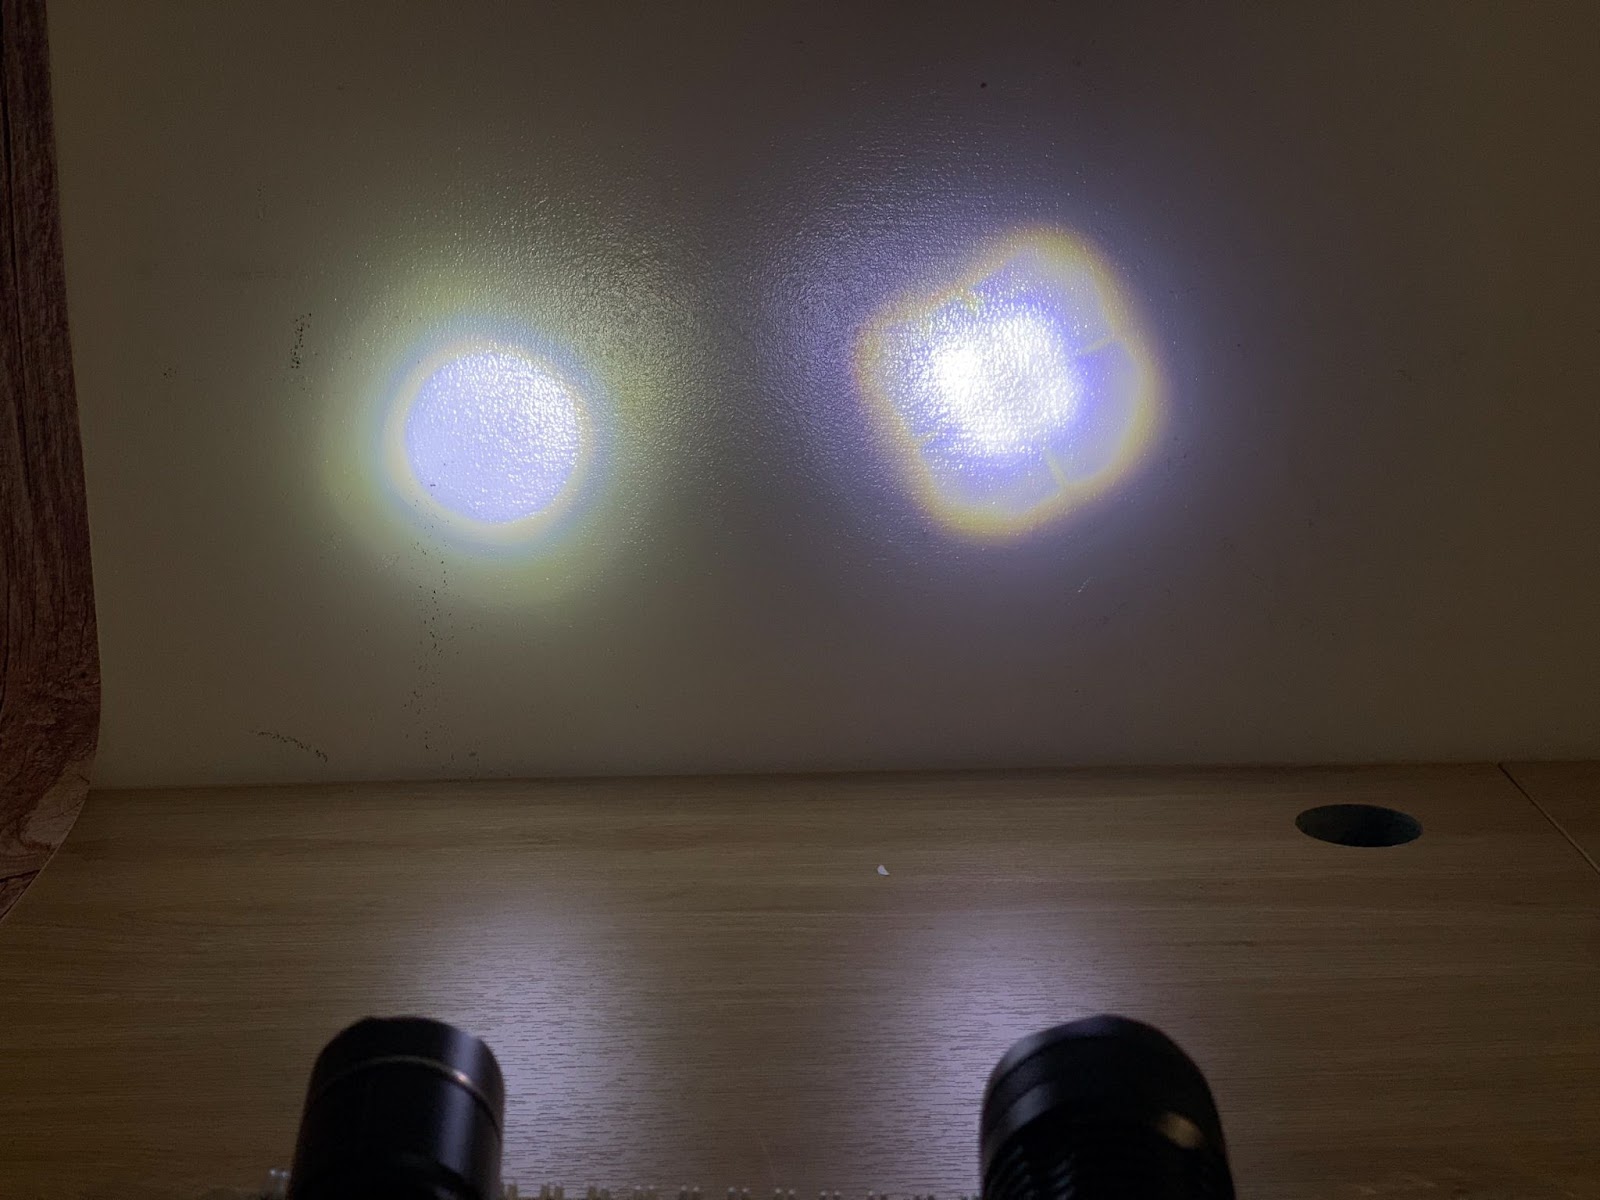 khả năng chiếu sáng của 2 đèn